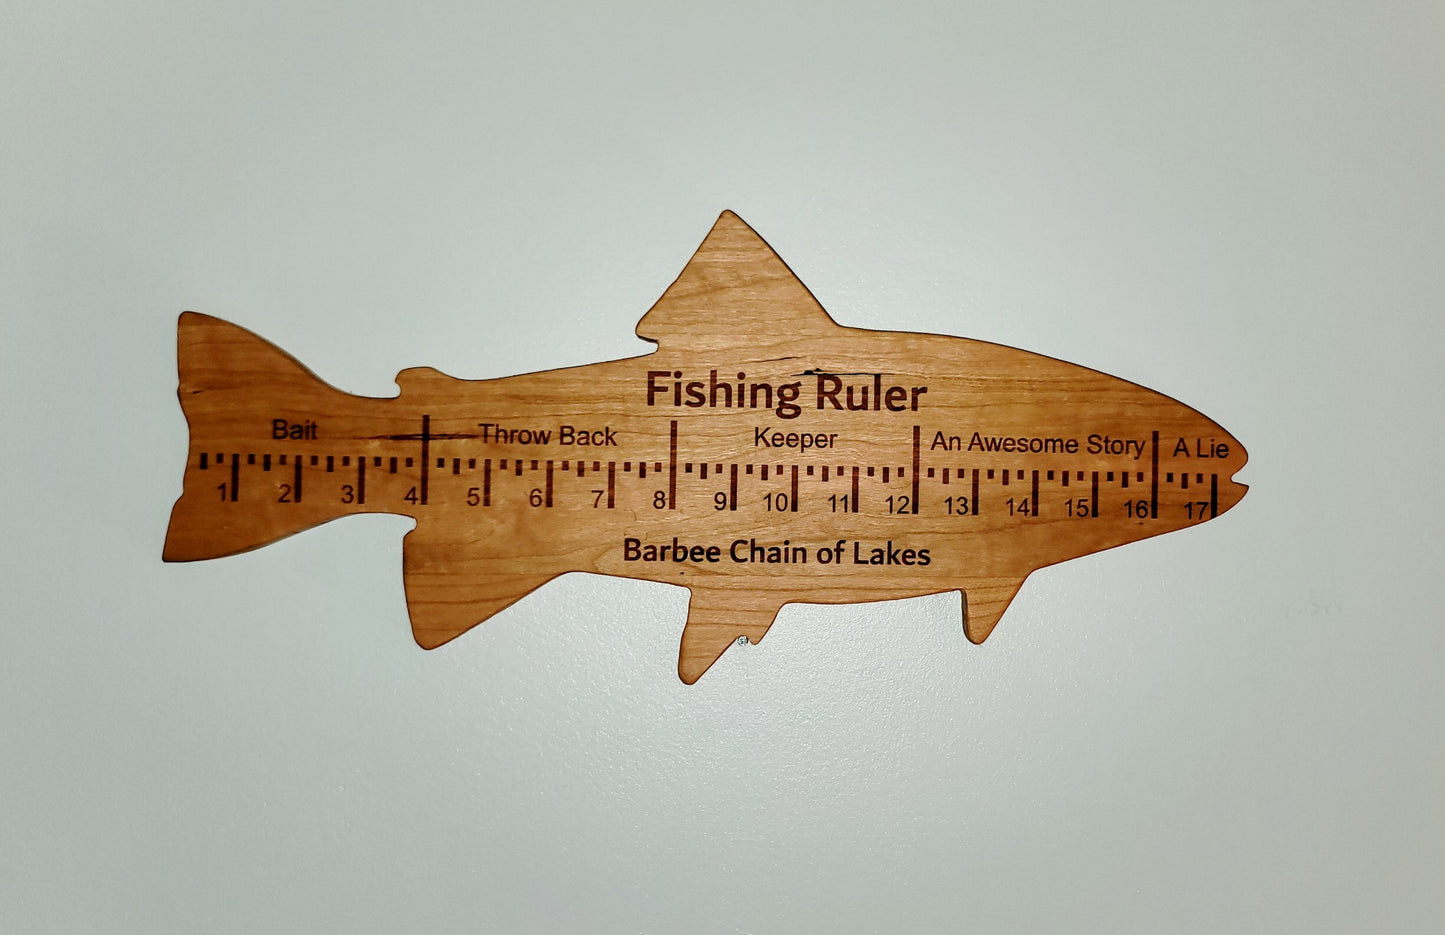 Fish Ruler